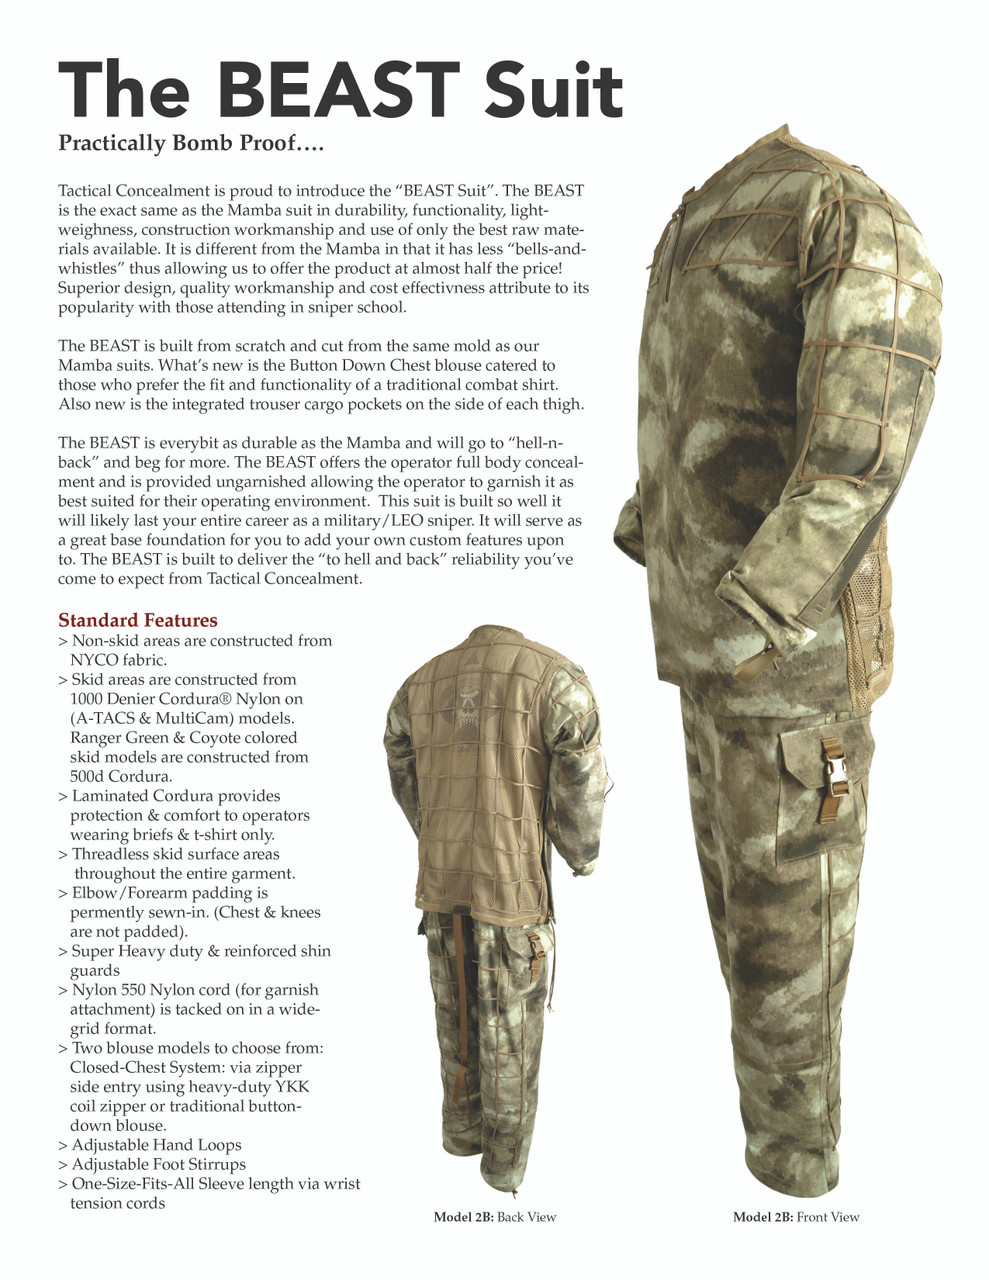 HDAM Viper - Tactical Concealment LLC